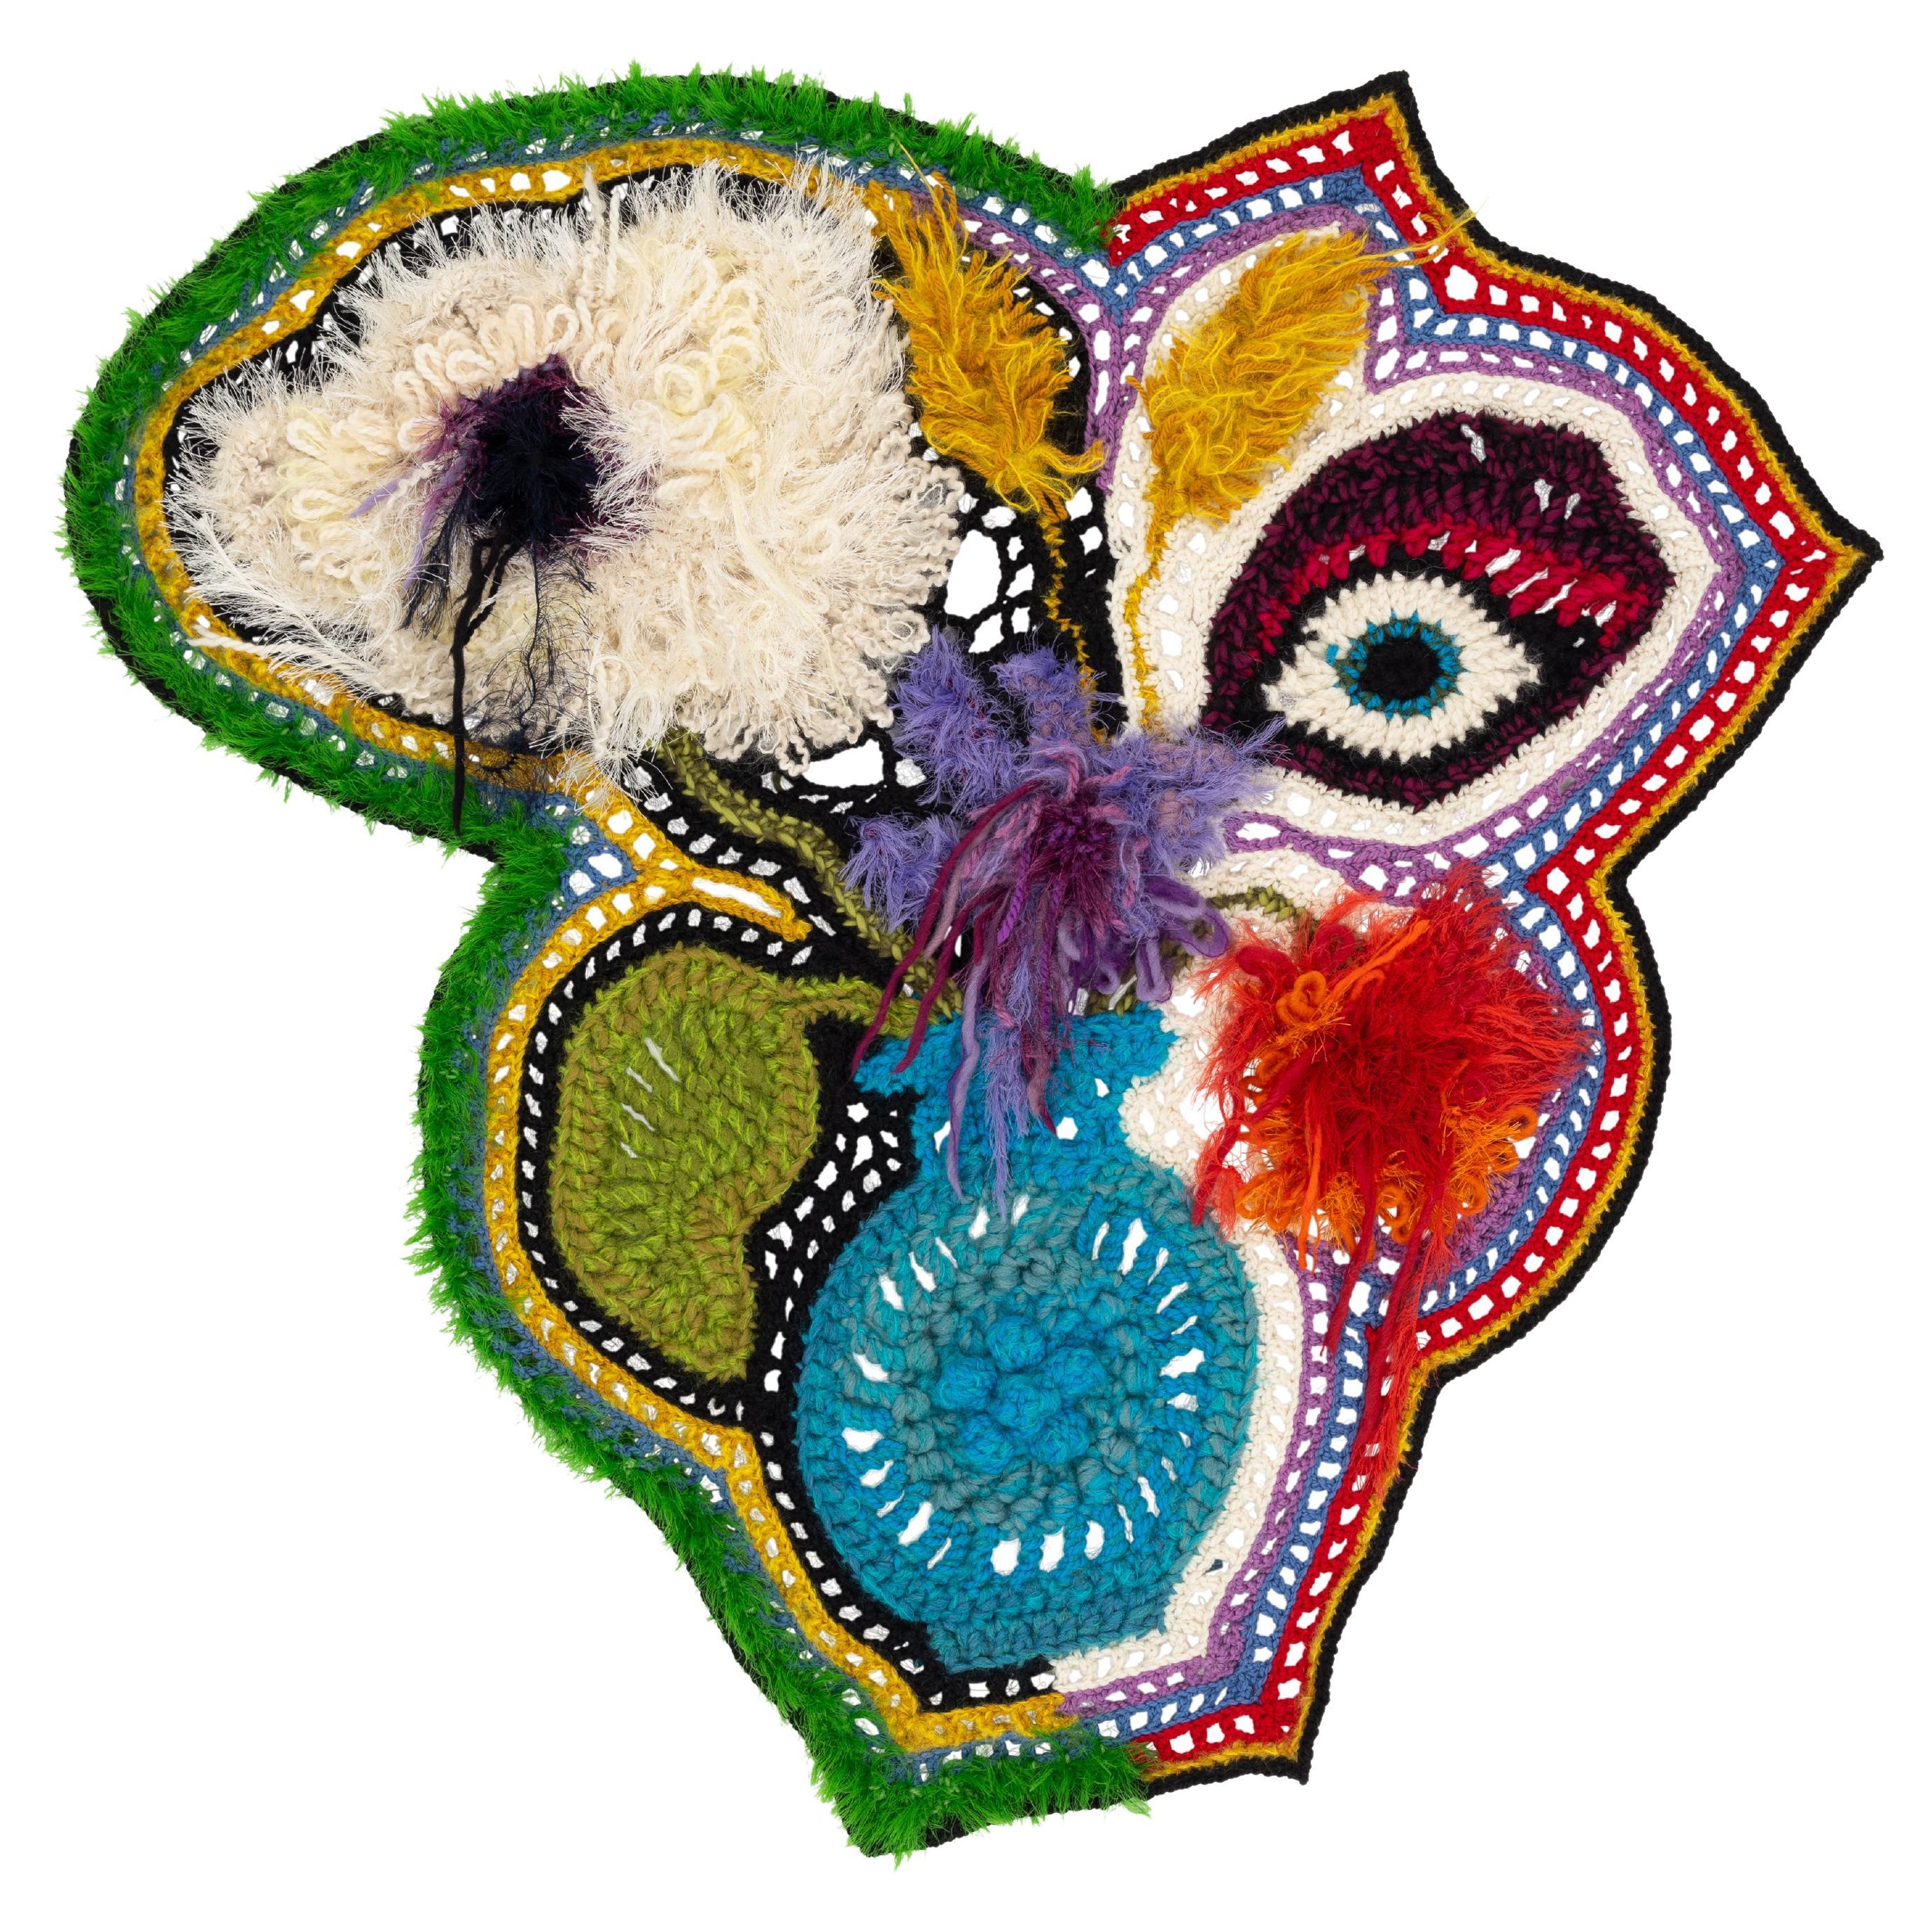 Plafonnier mural « Flower Face » en tricot/crocheté à la main représentant un bouquet de vases multicolore